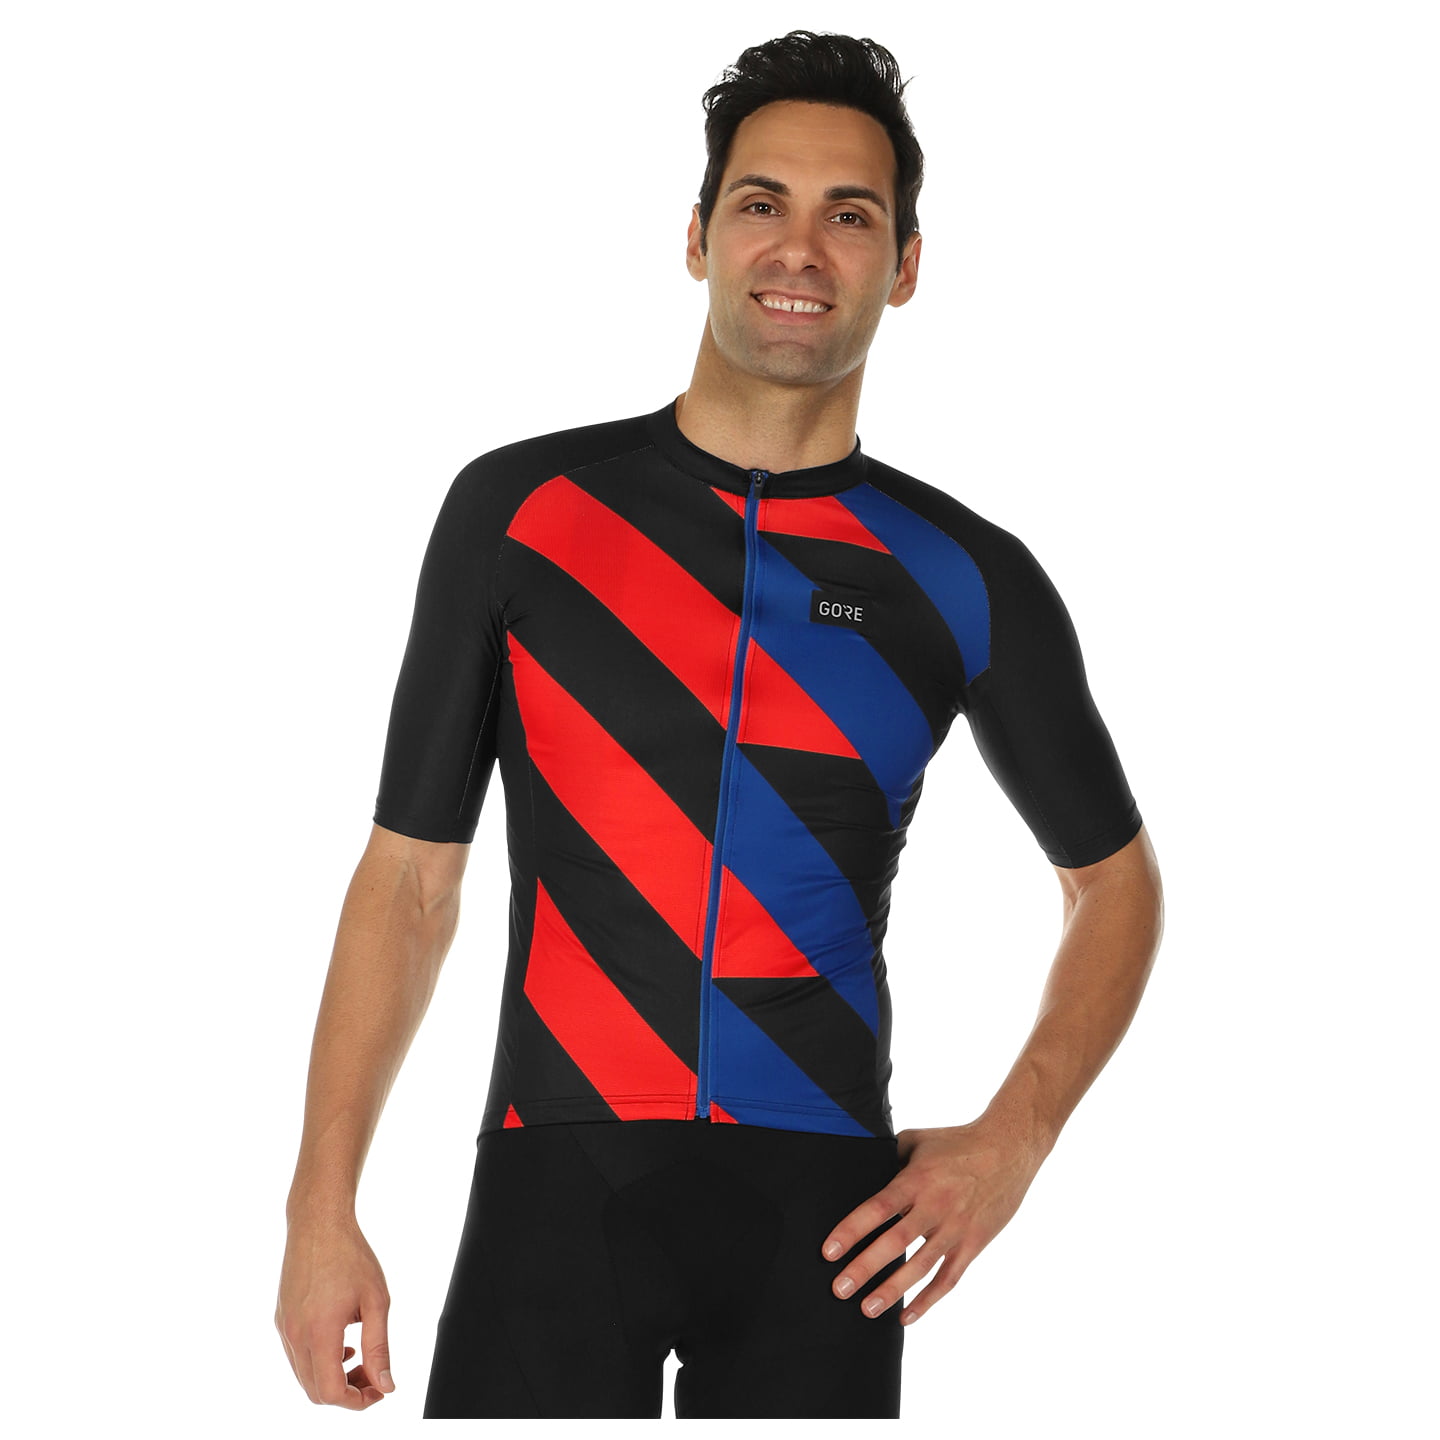 GORE WEAR Signal Short Sleeve Jersey Short Sleeve Jersey, for men, size L, Cycling jersey, Cycling clothing